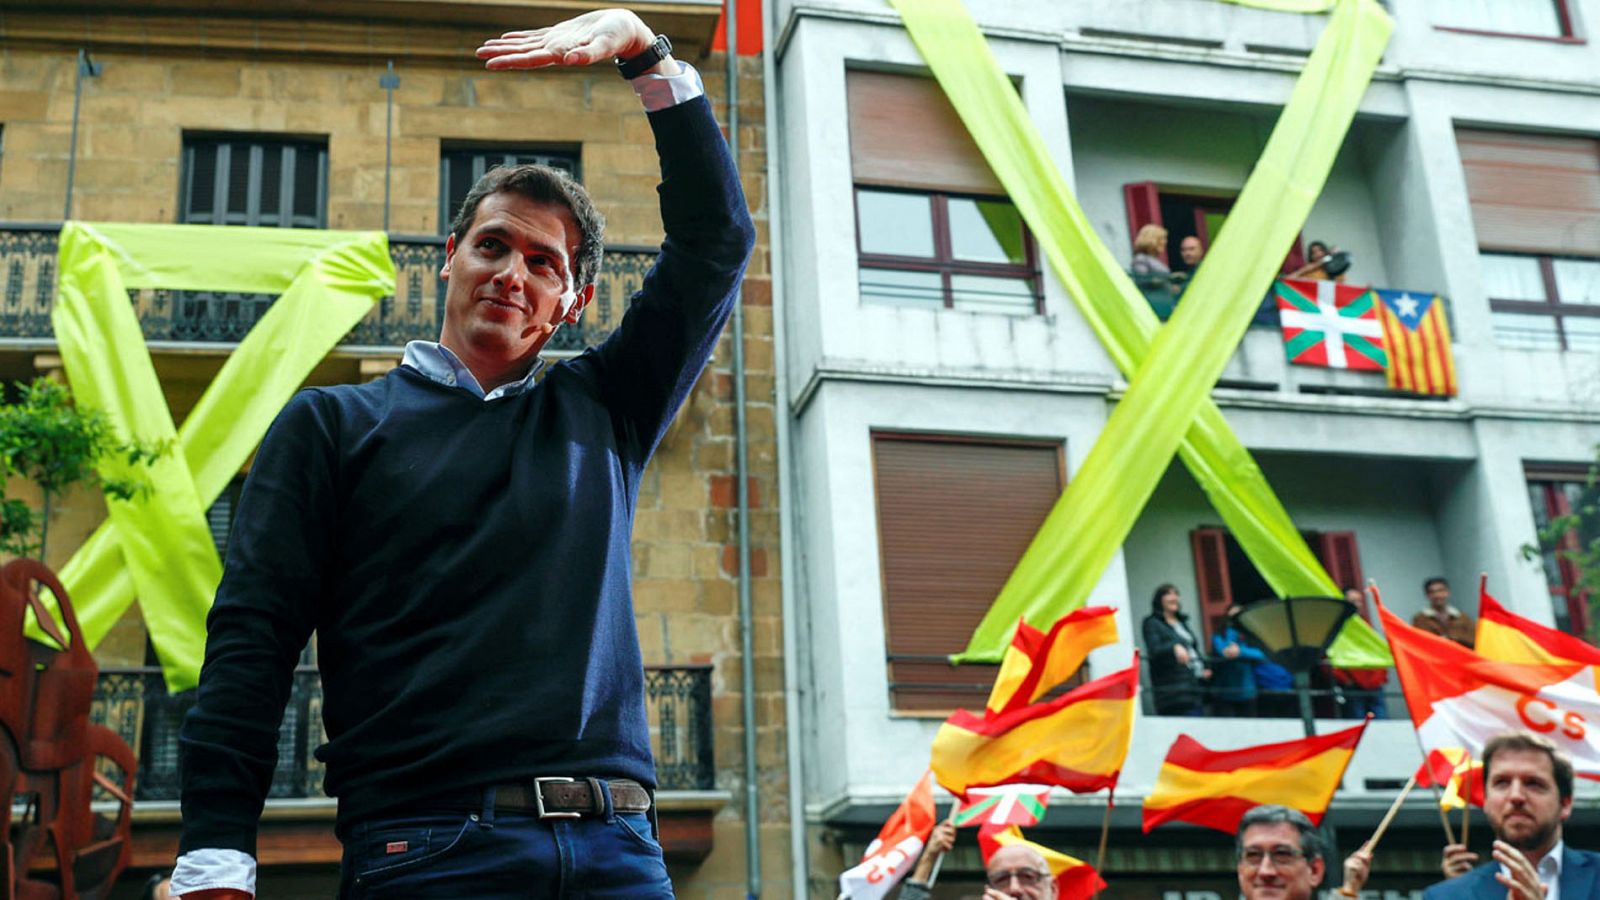 Elecciones generales 2019: Rivera defiende la "libertad" entre insultos, gritos y símbolos independentistas en Rentería - RTVE.es